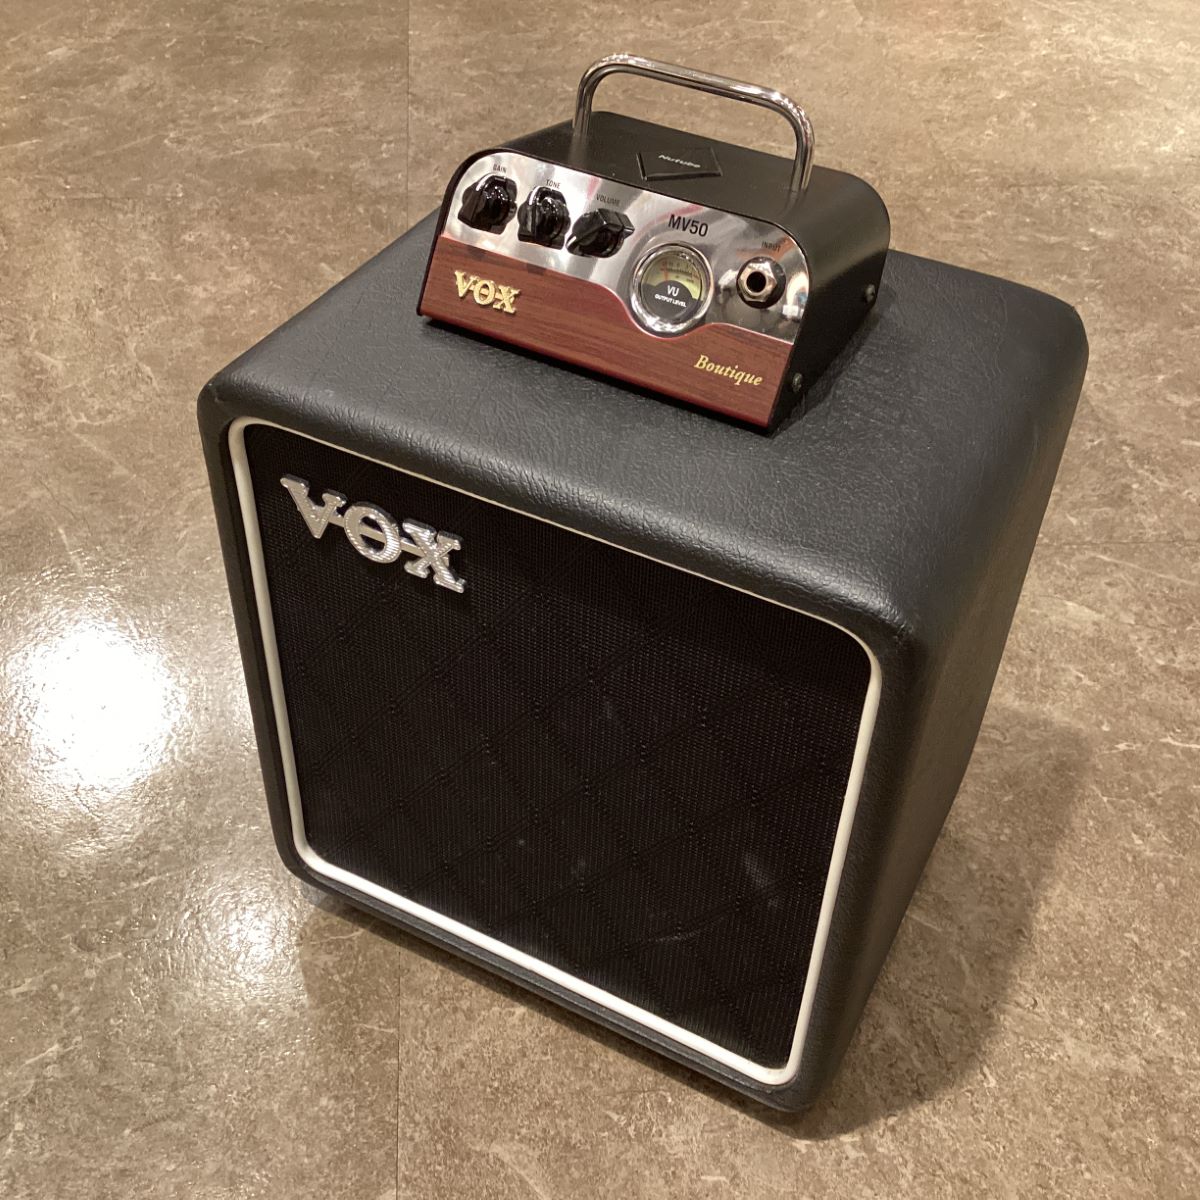 vox Nutube搭載ヘッド・アンプ MV50とギターキャビネットセット-